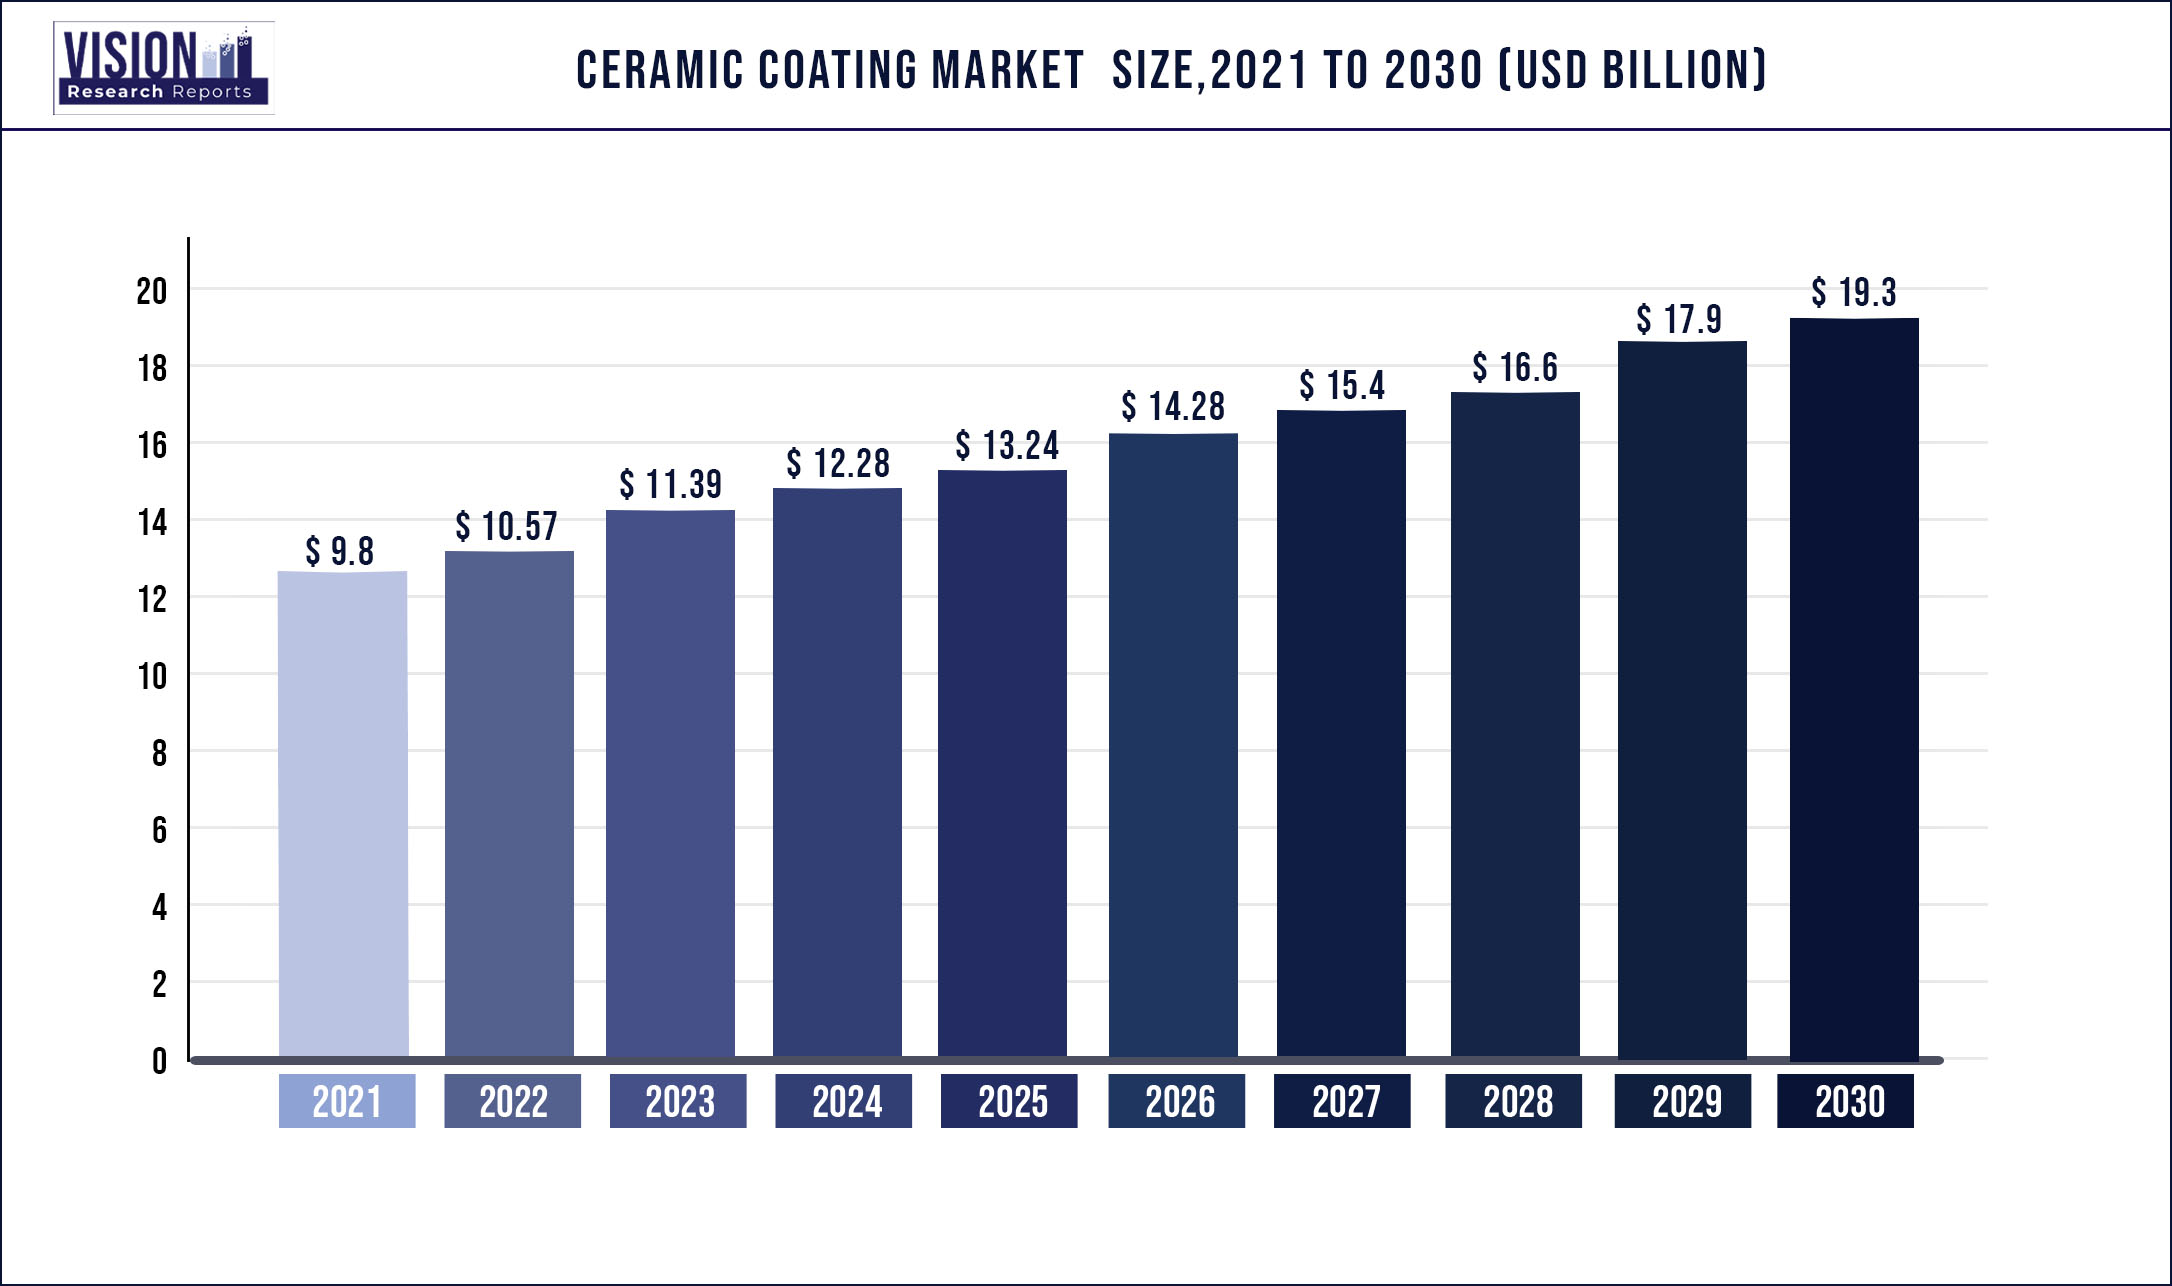 Ceramic Coating Market Size 2021 to 2030